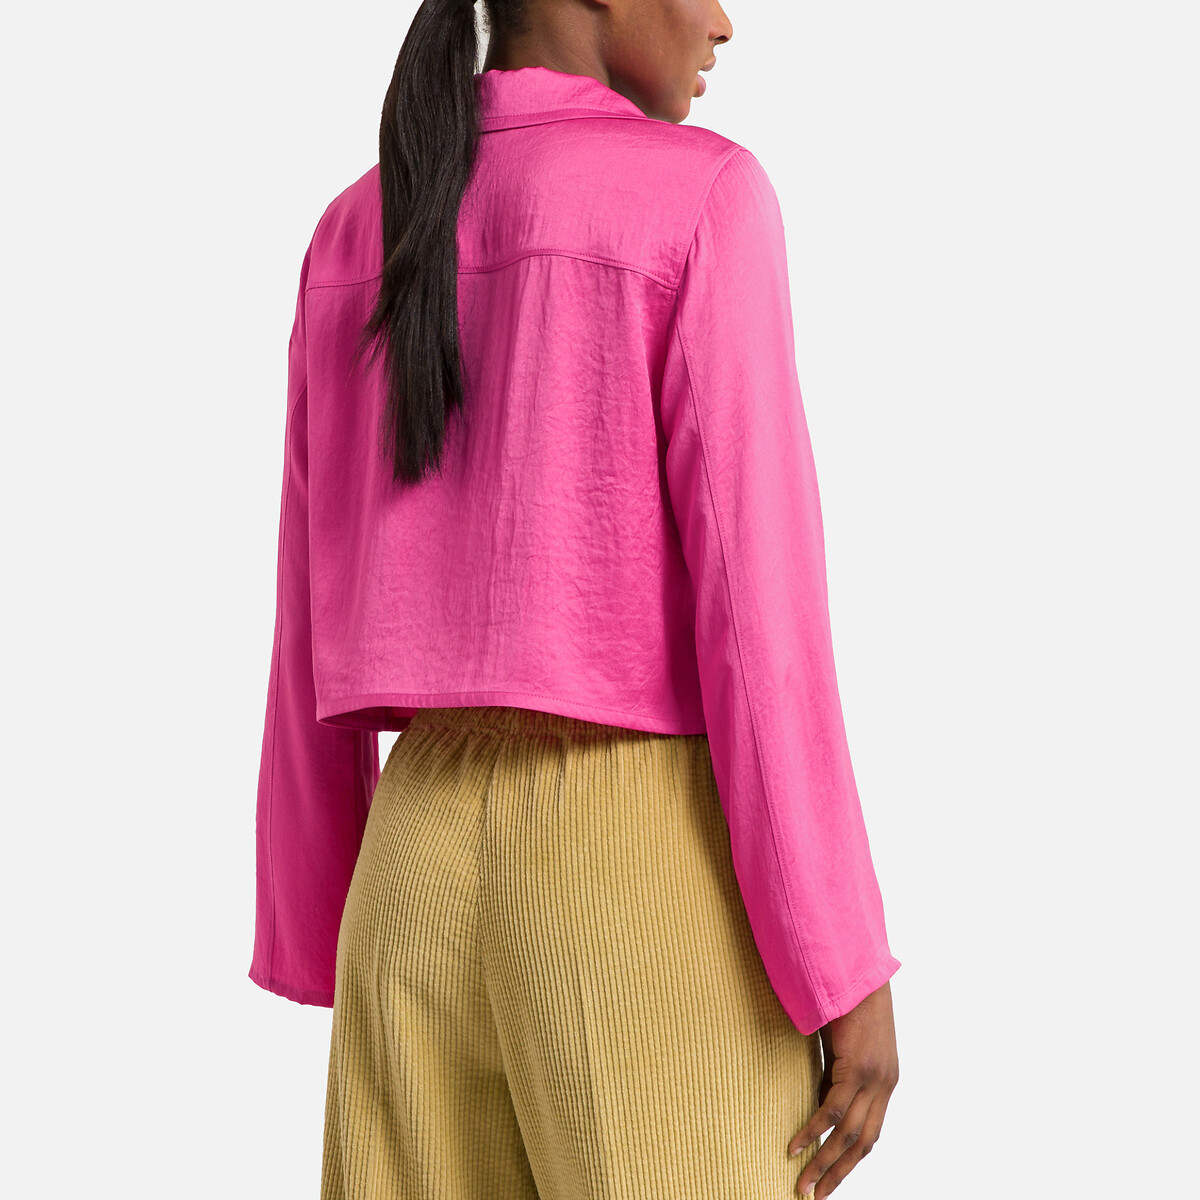 Рубашка Укороченная с длинными рукавами L розовый LaRedoute, размер L - фото 4